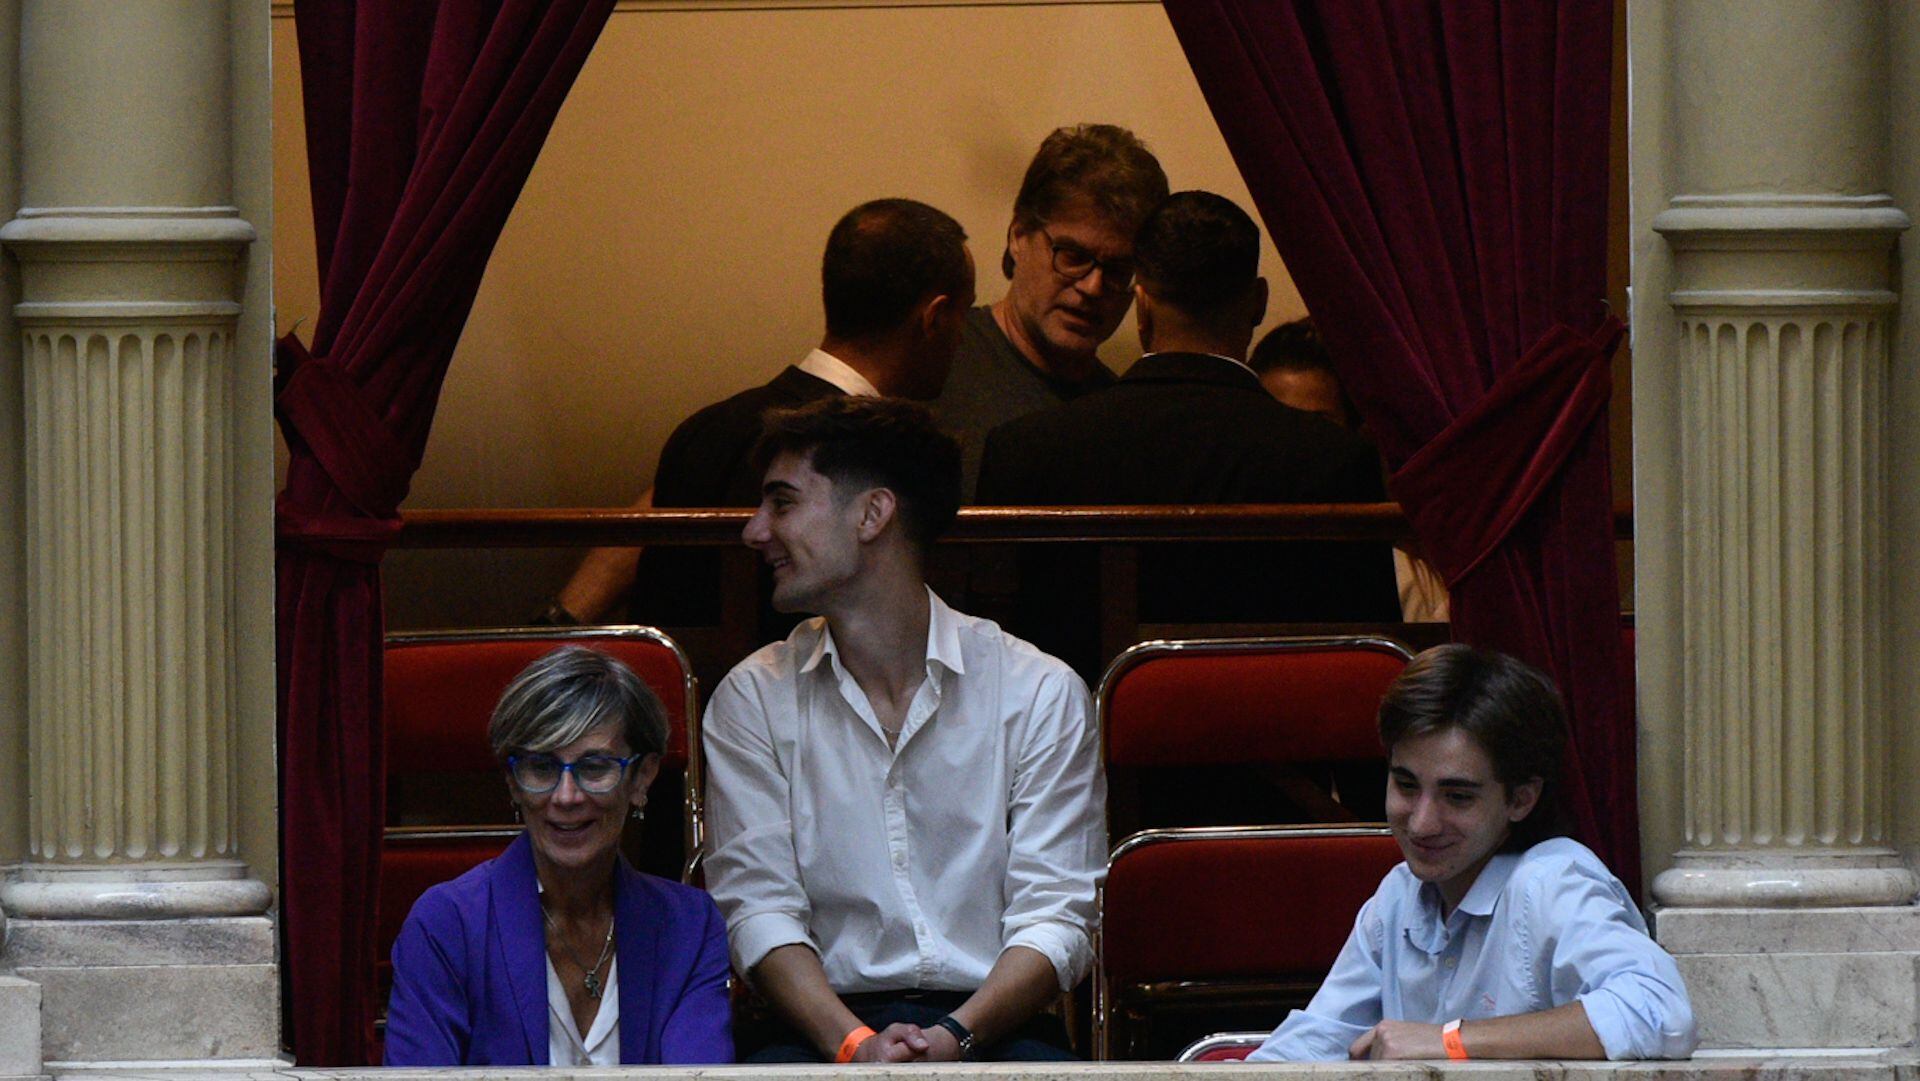 Debate de la Ley Ómnibus en el Congreso interior recinto persona expulasada por insultar a Myriam Bregman portada